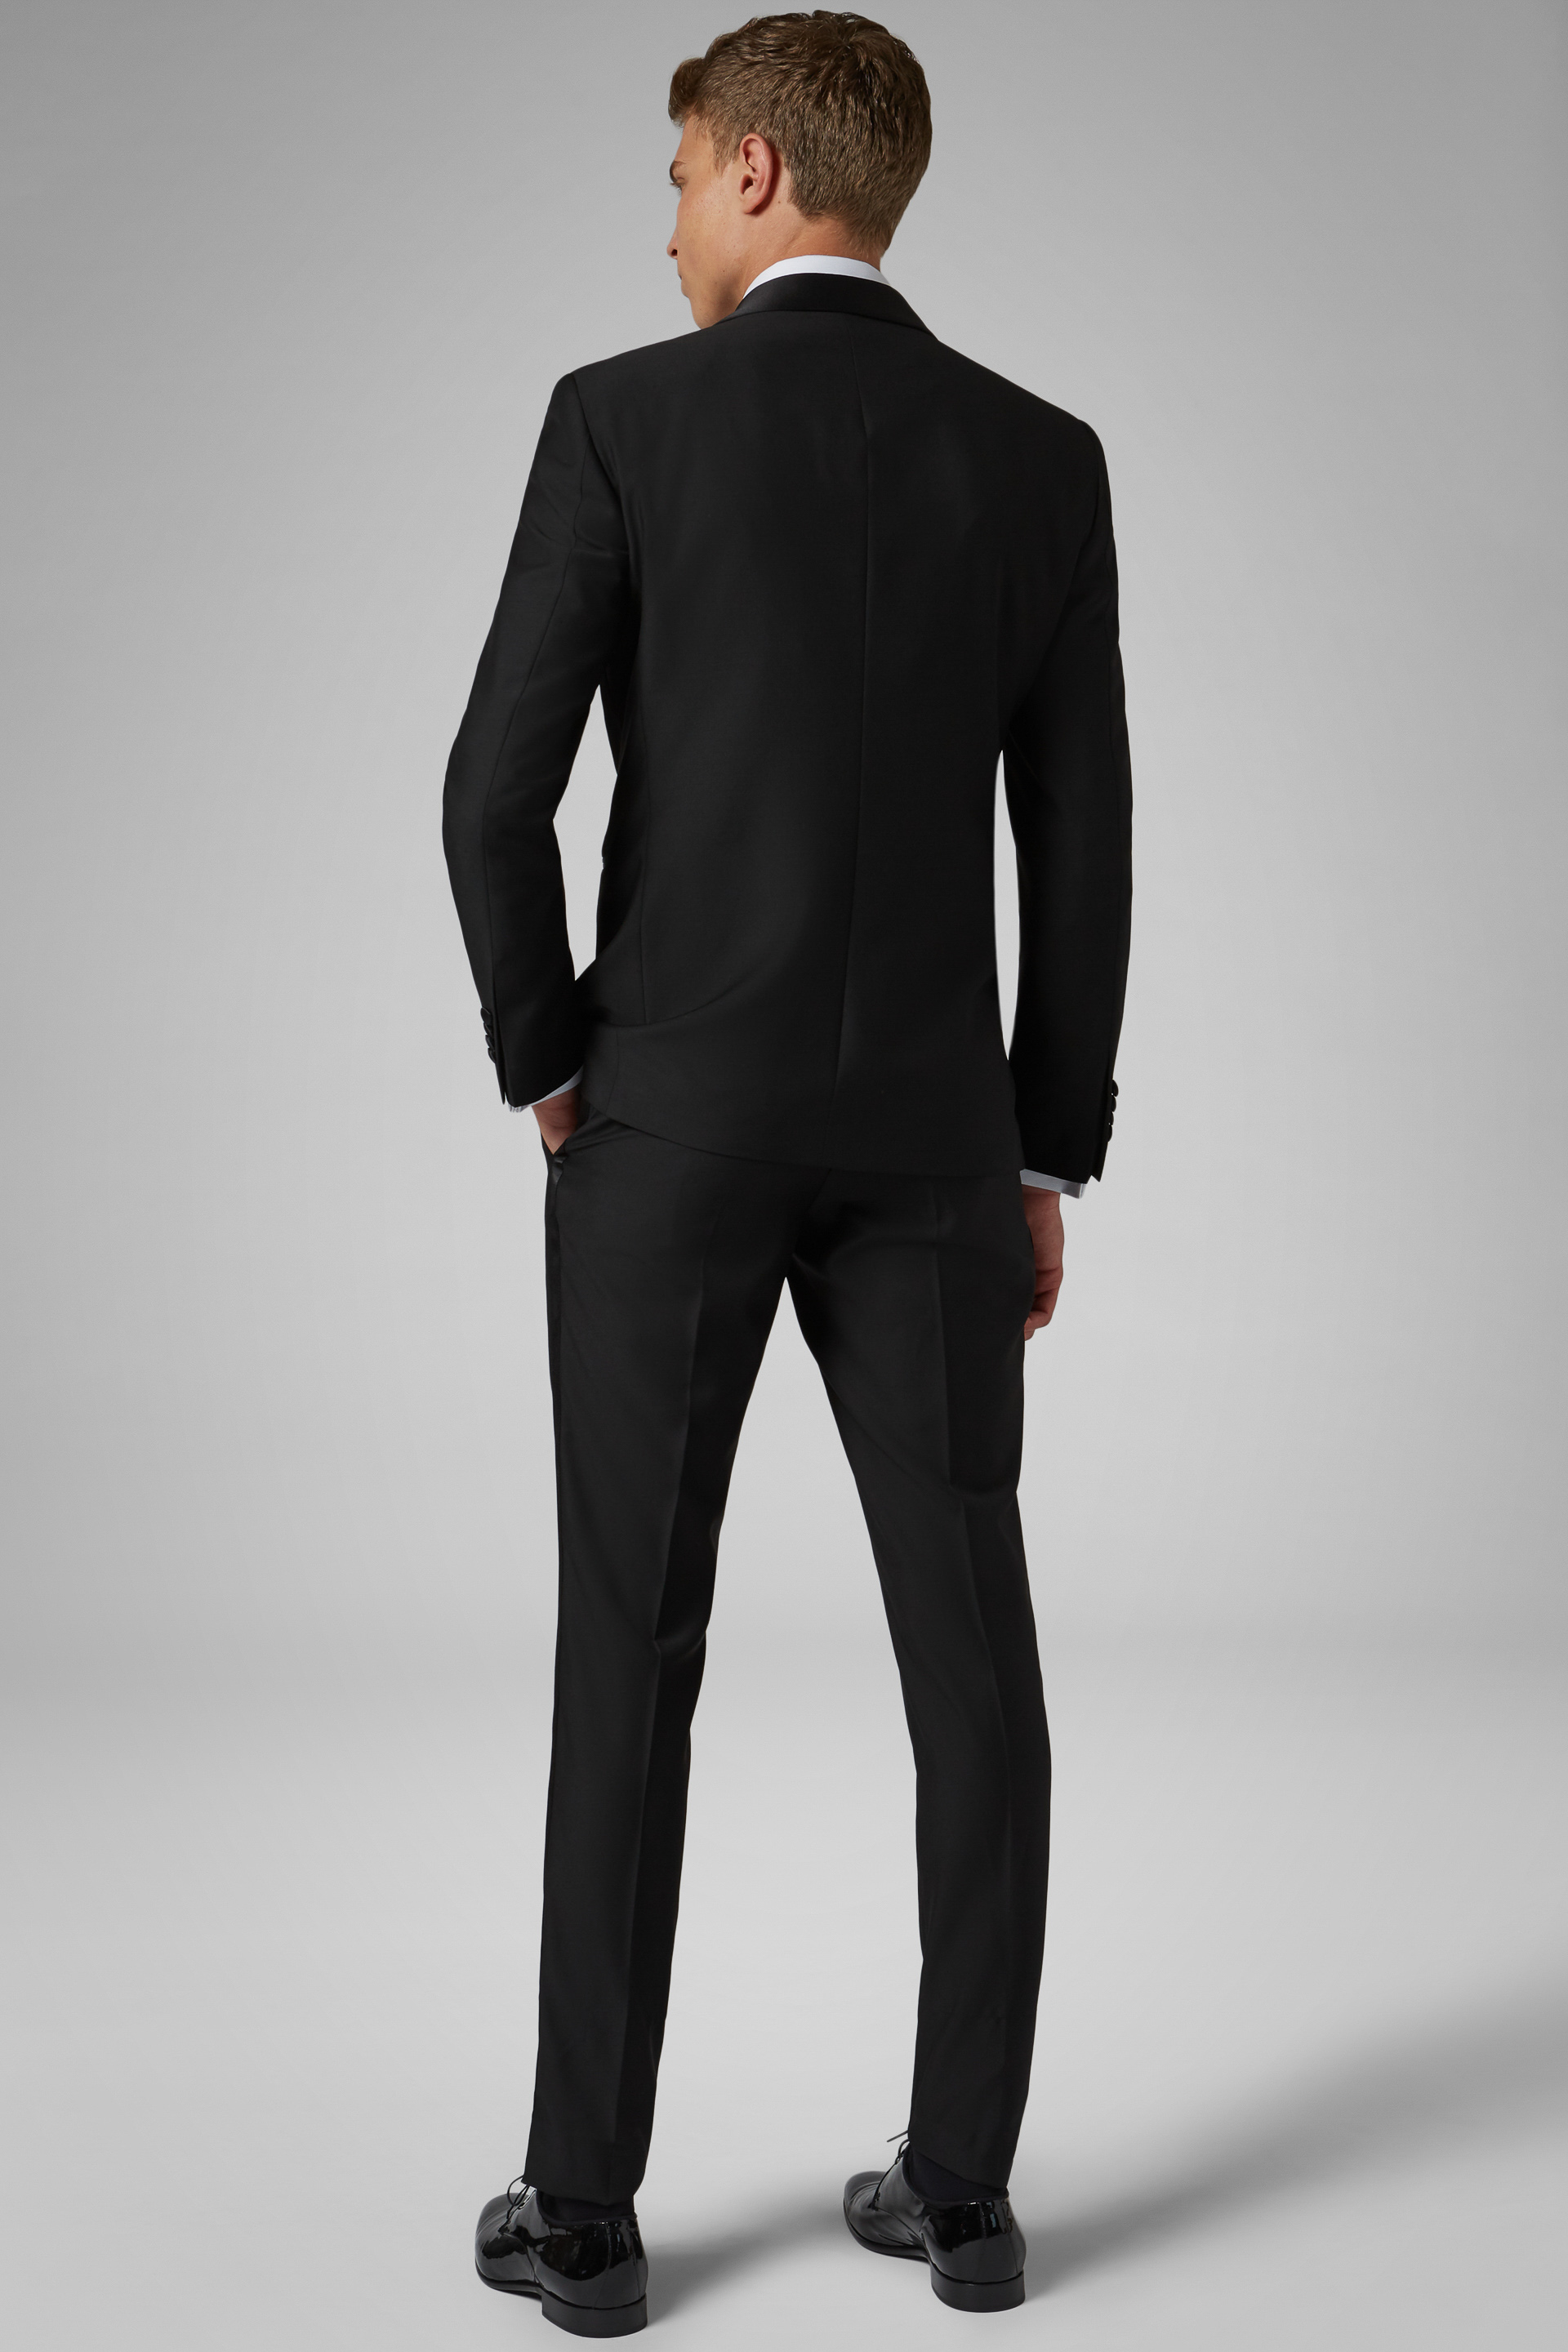 Shop Blujacket Black 100% Wool Tuxedo